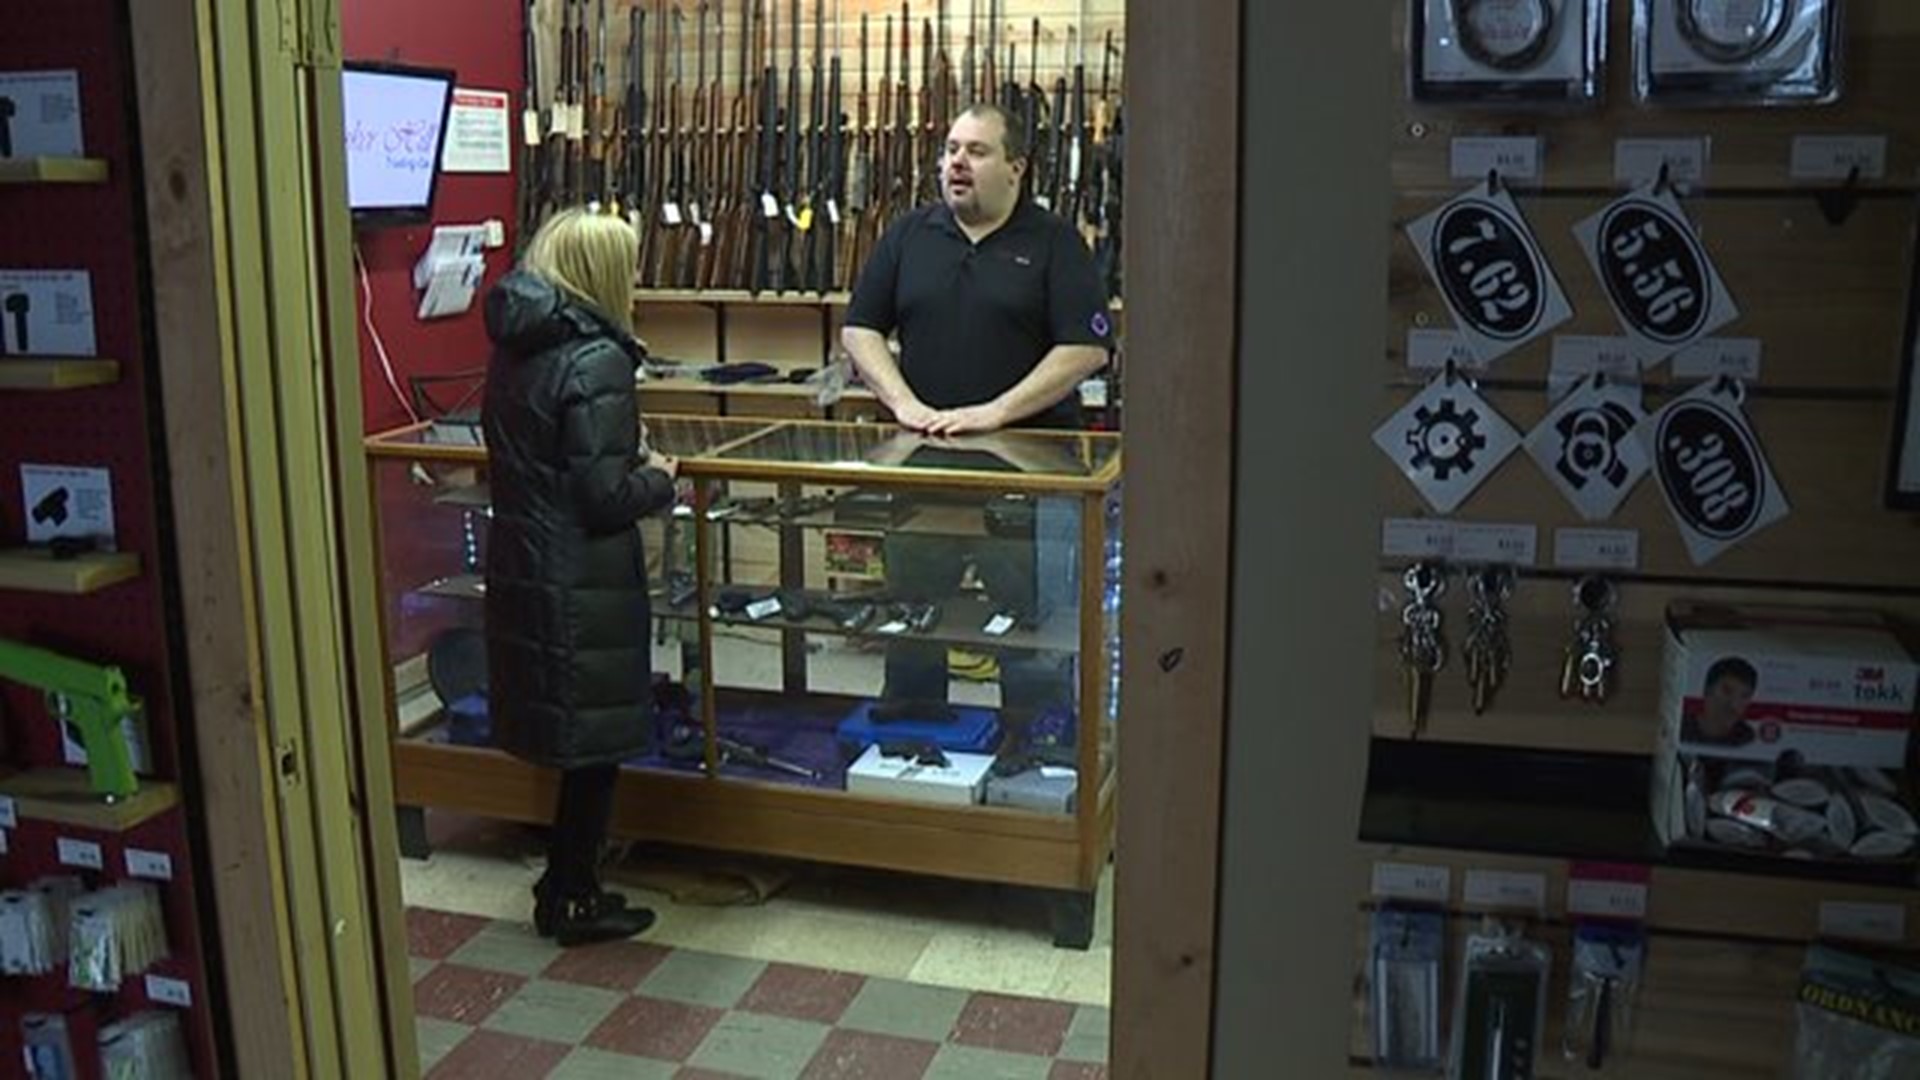 Local Gun Shop reacts to potential executive order